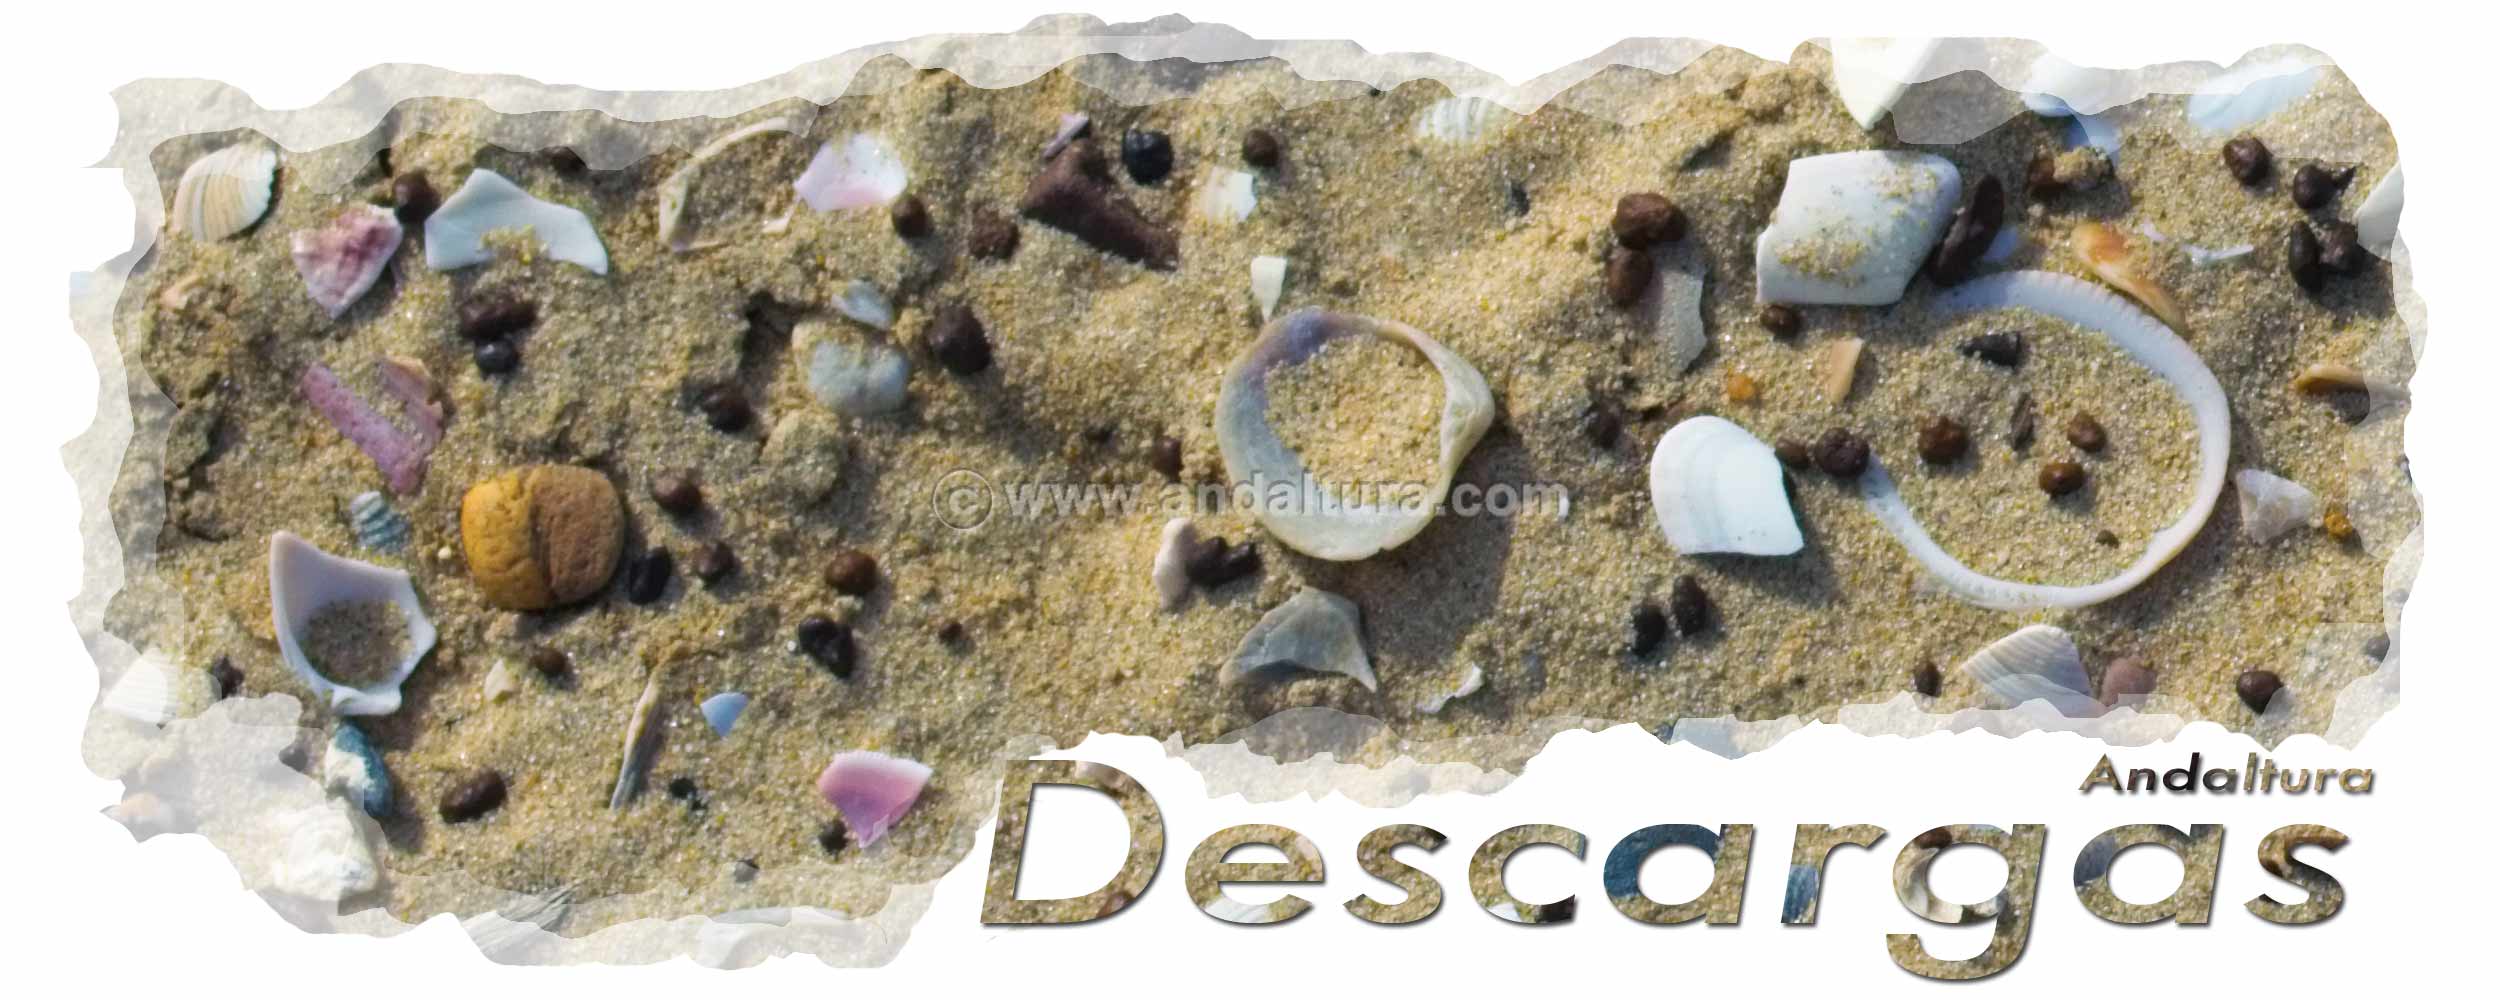 Conchas playa - Cabecera de la zona de descargas de archivos gratis de Andaltura